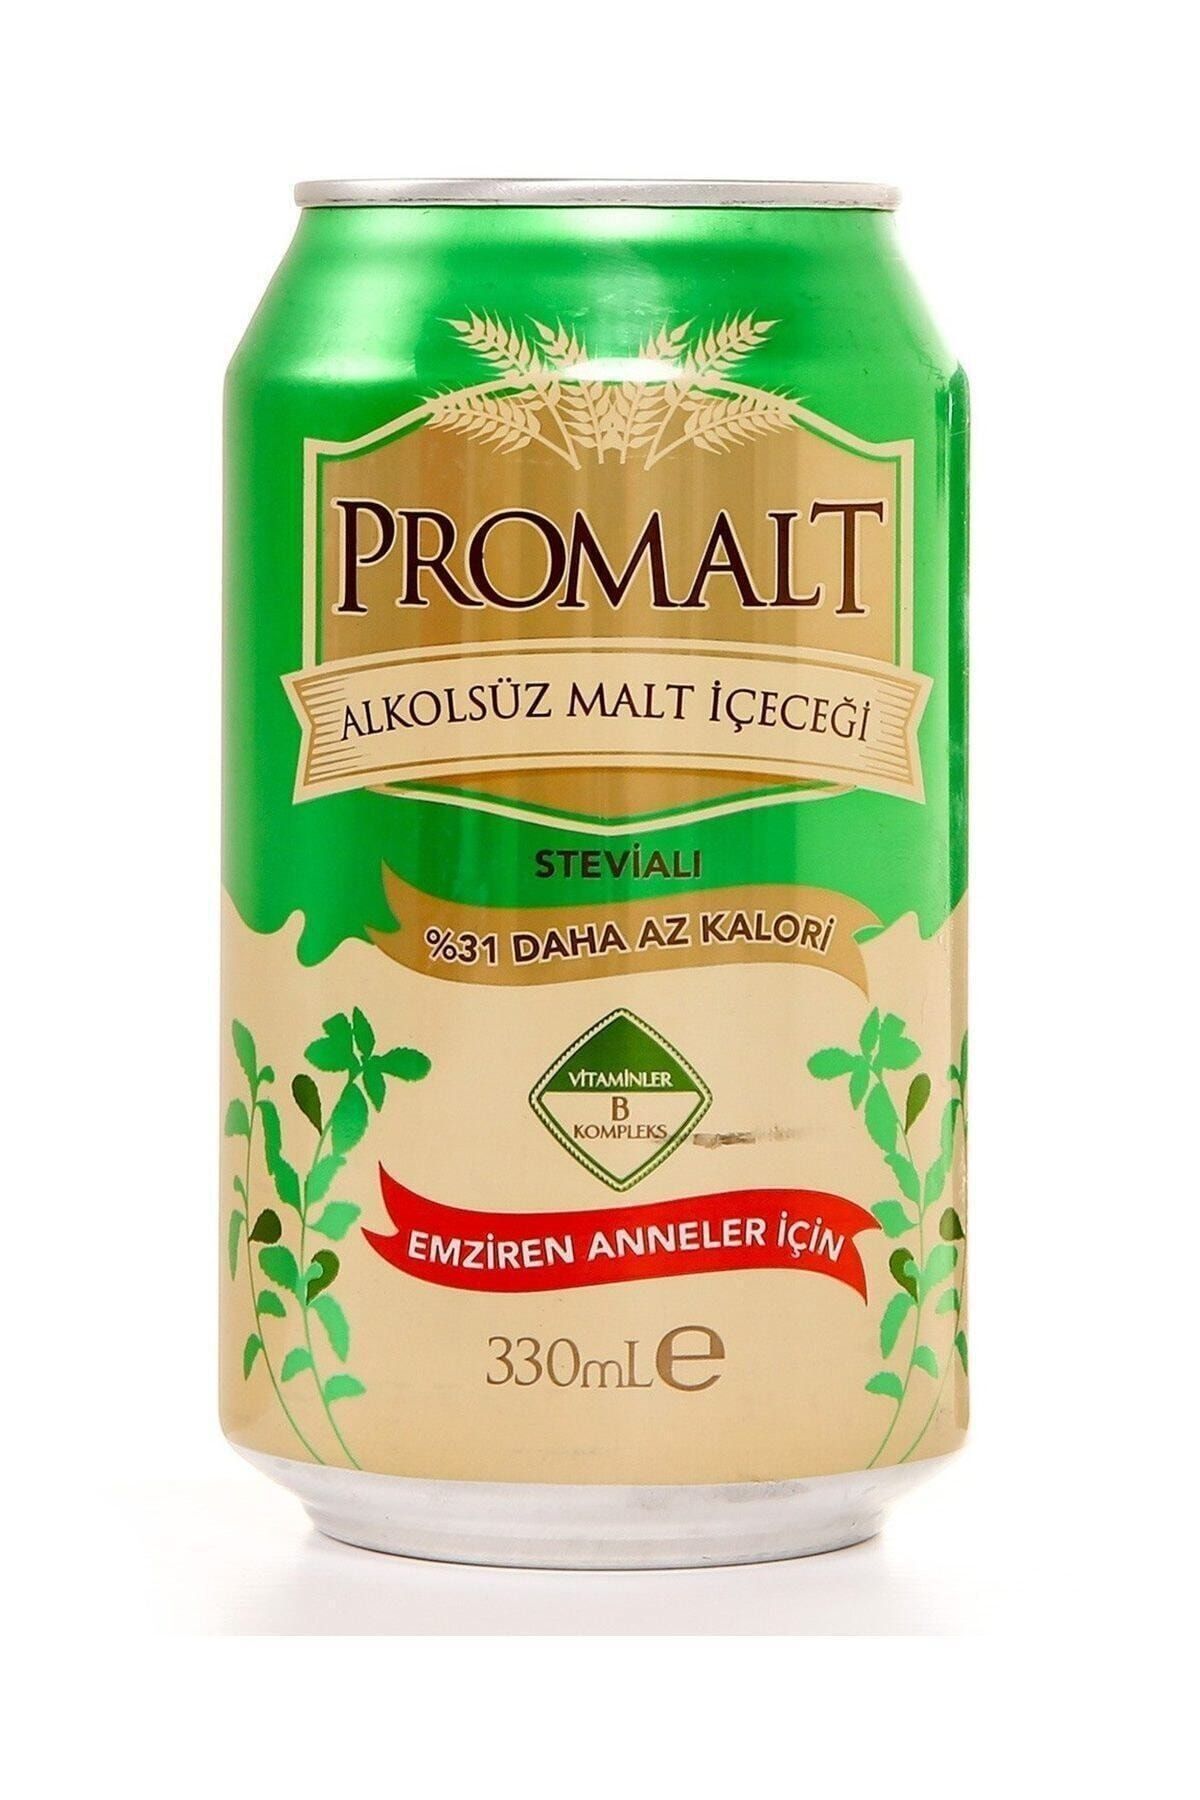 Promalt Stevialı Alkolsüz Malt Içeceği 330 Ml